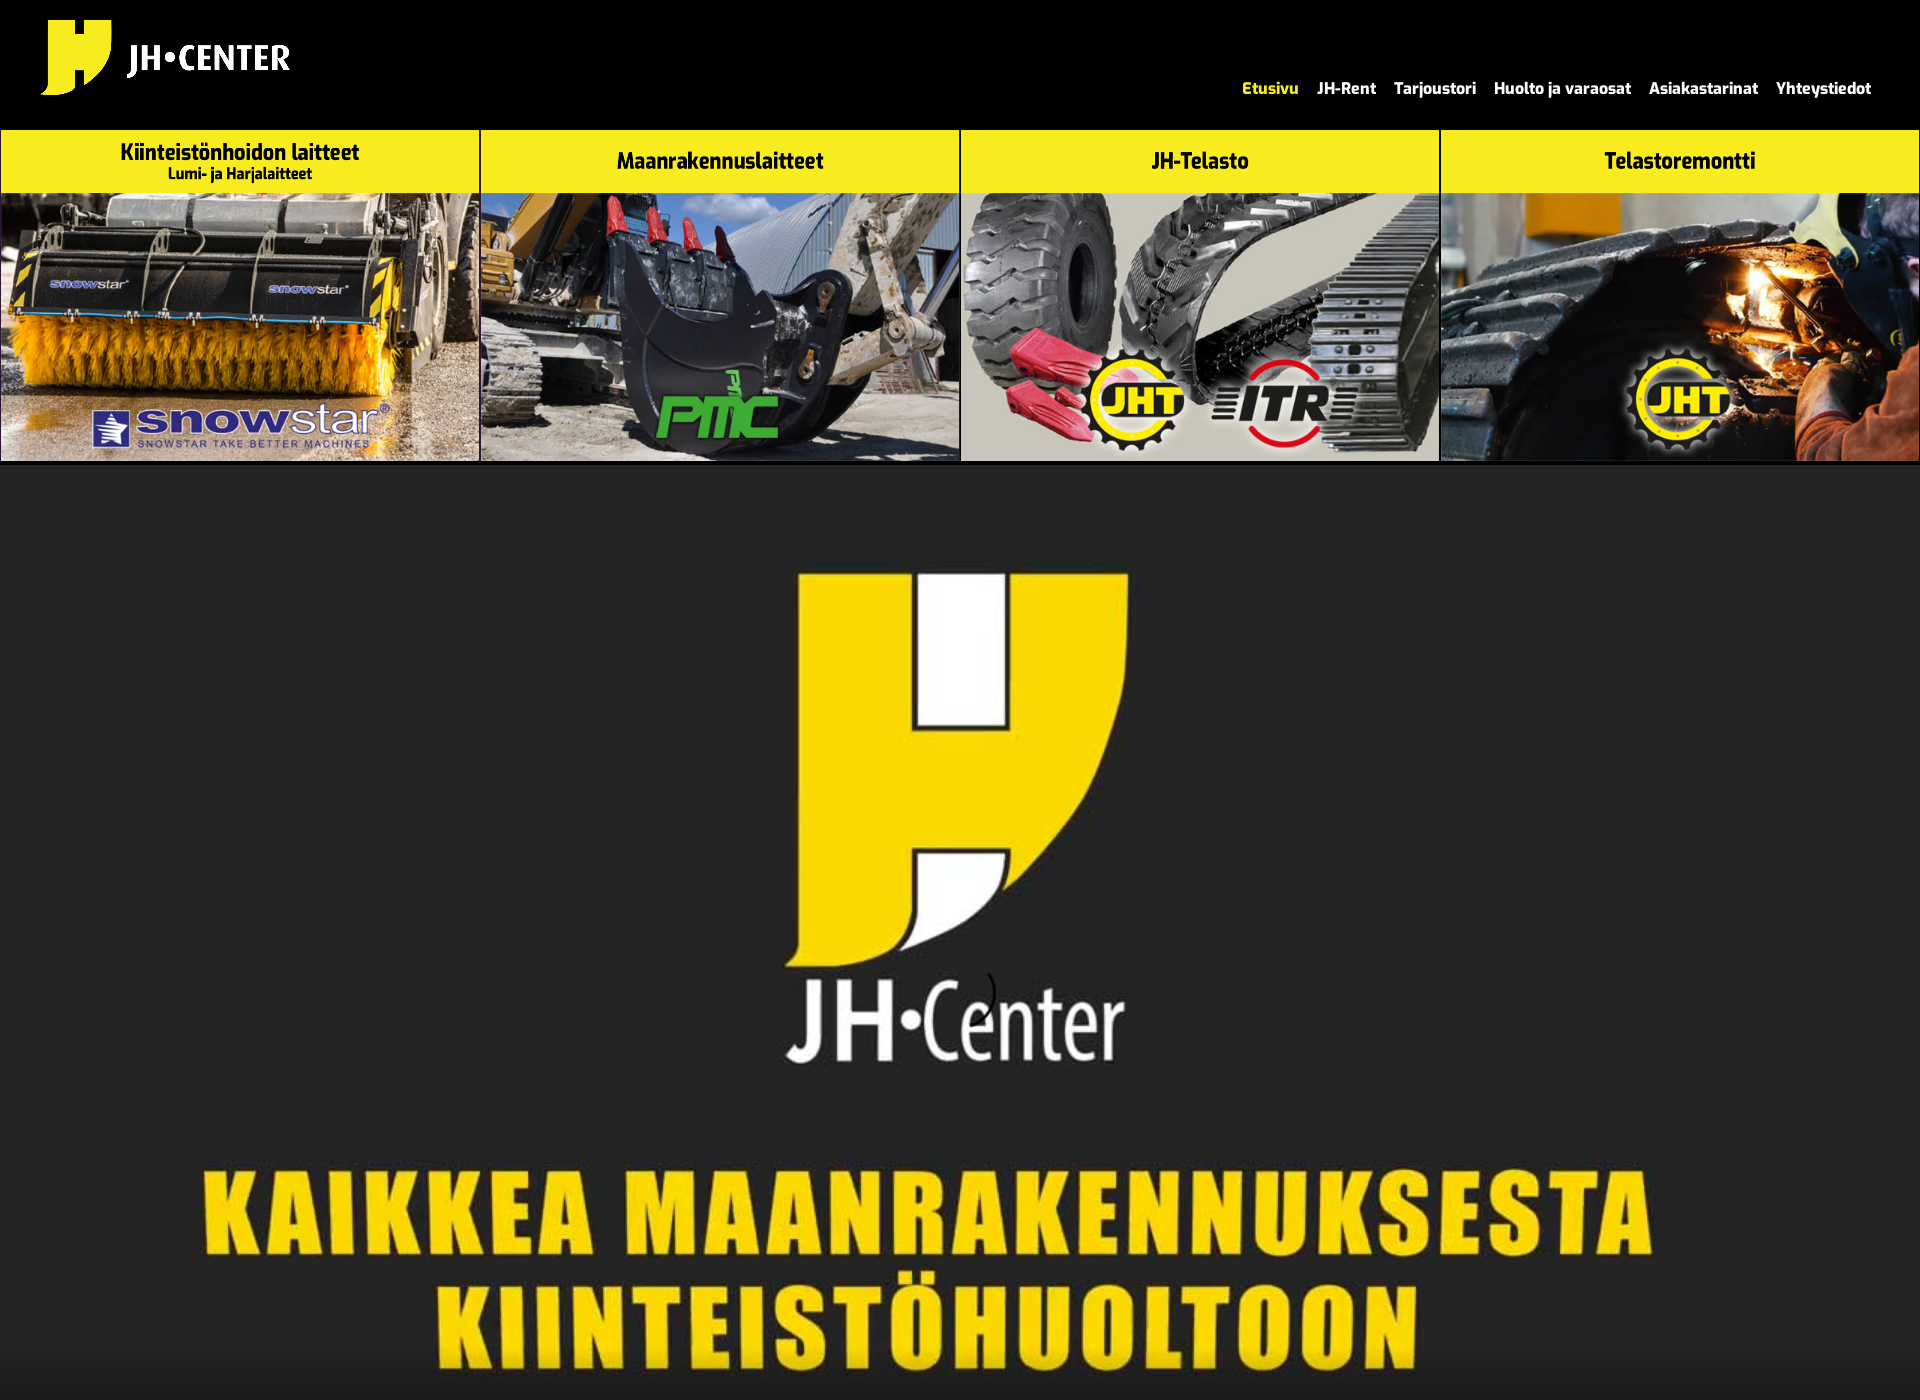 Screenshot for jhtelasto.fi